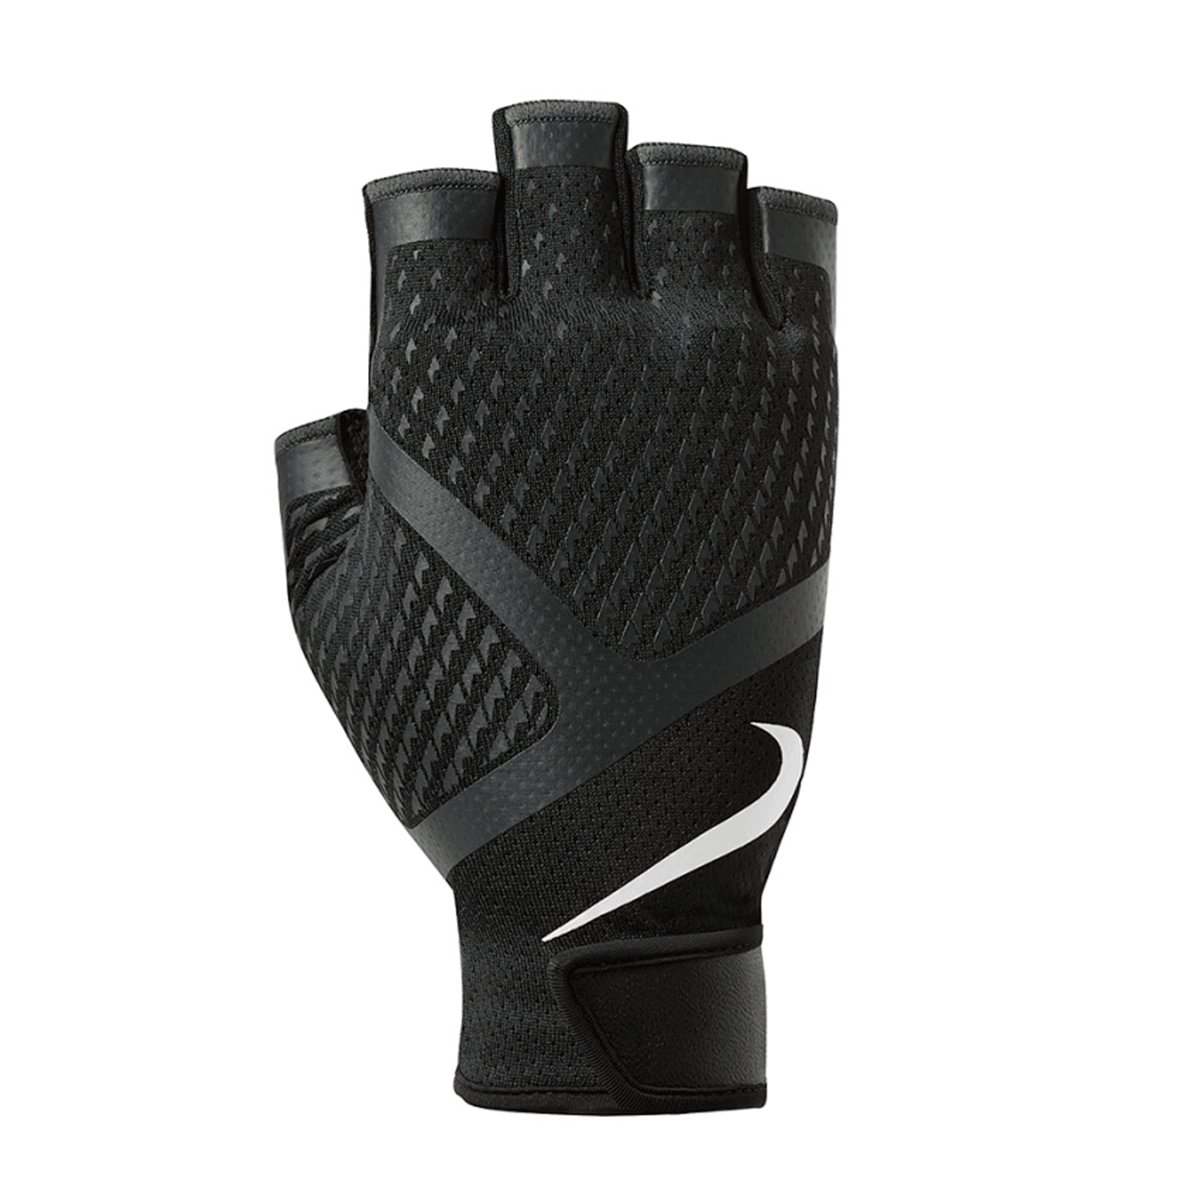 Renegade Training Gloves (M) - pikkorisport